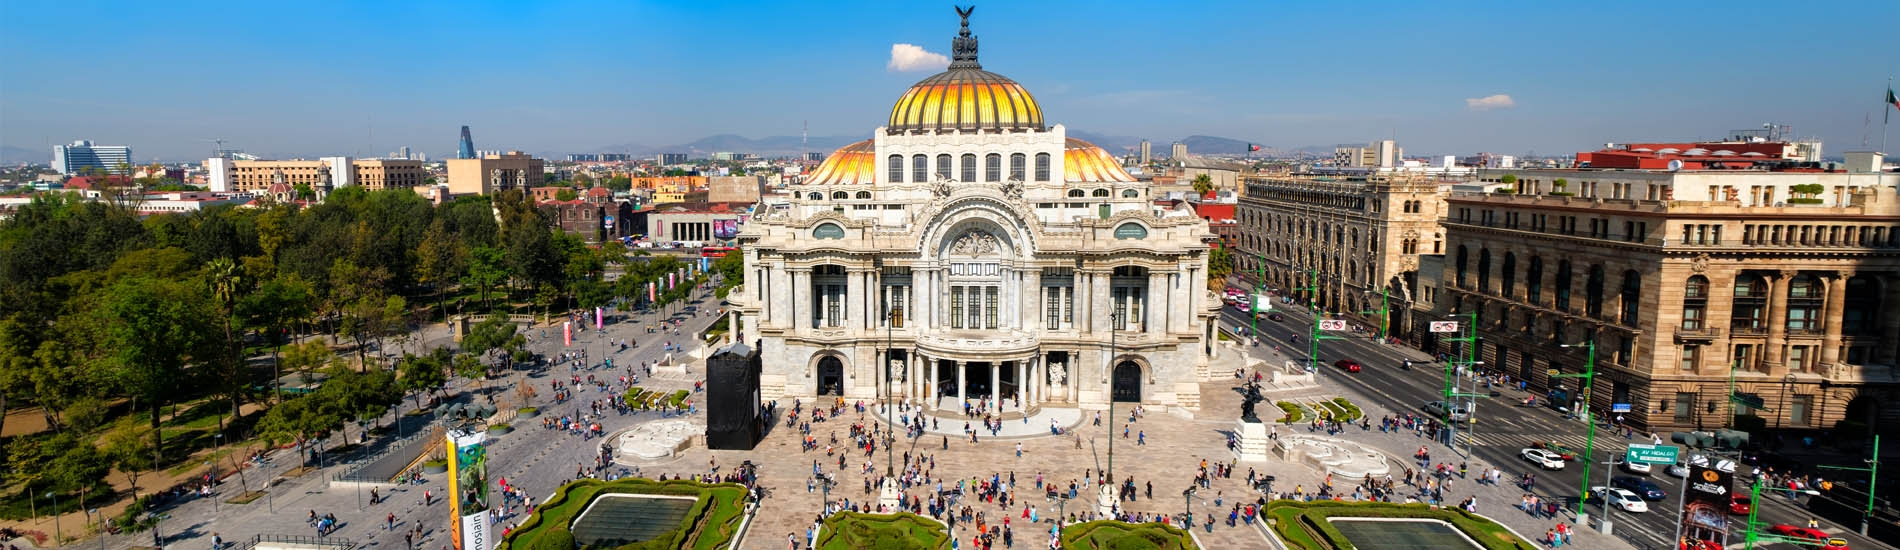 The palacio de Bellas Artes view - Mexico